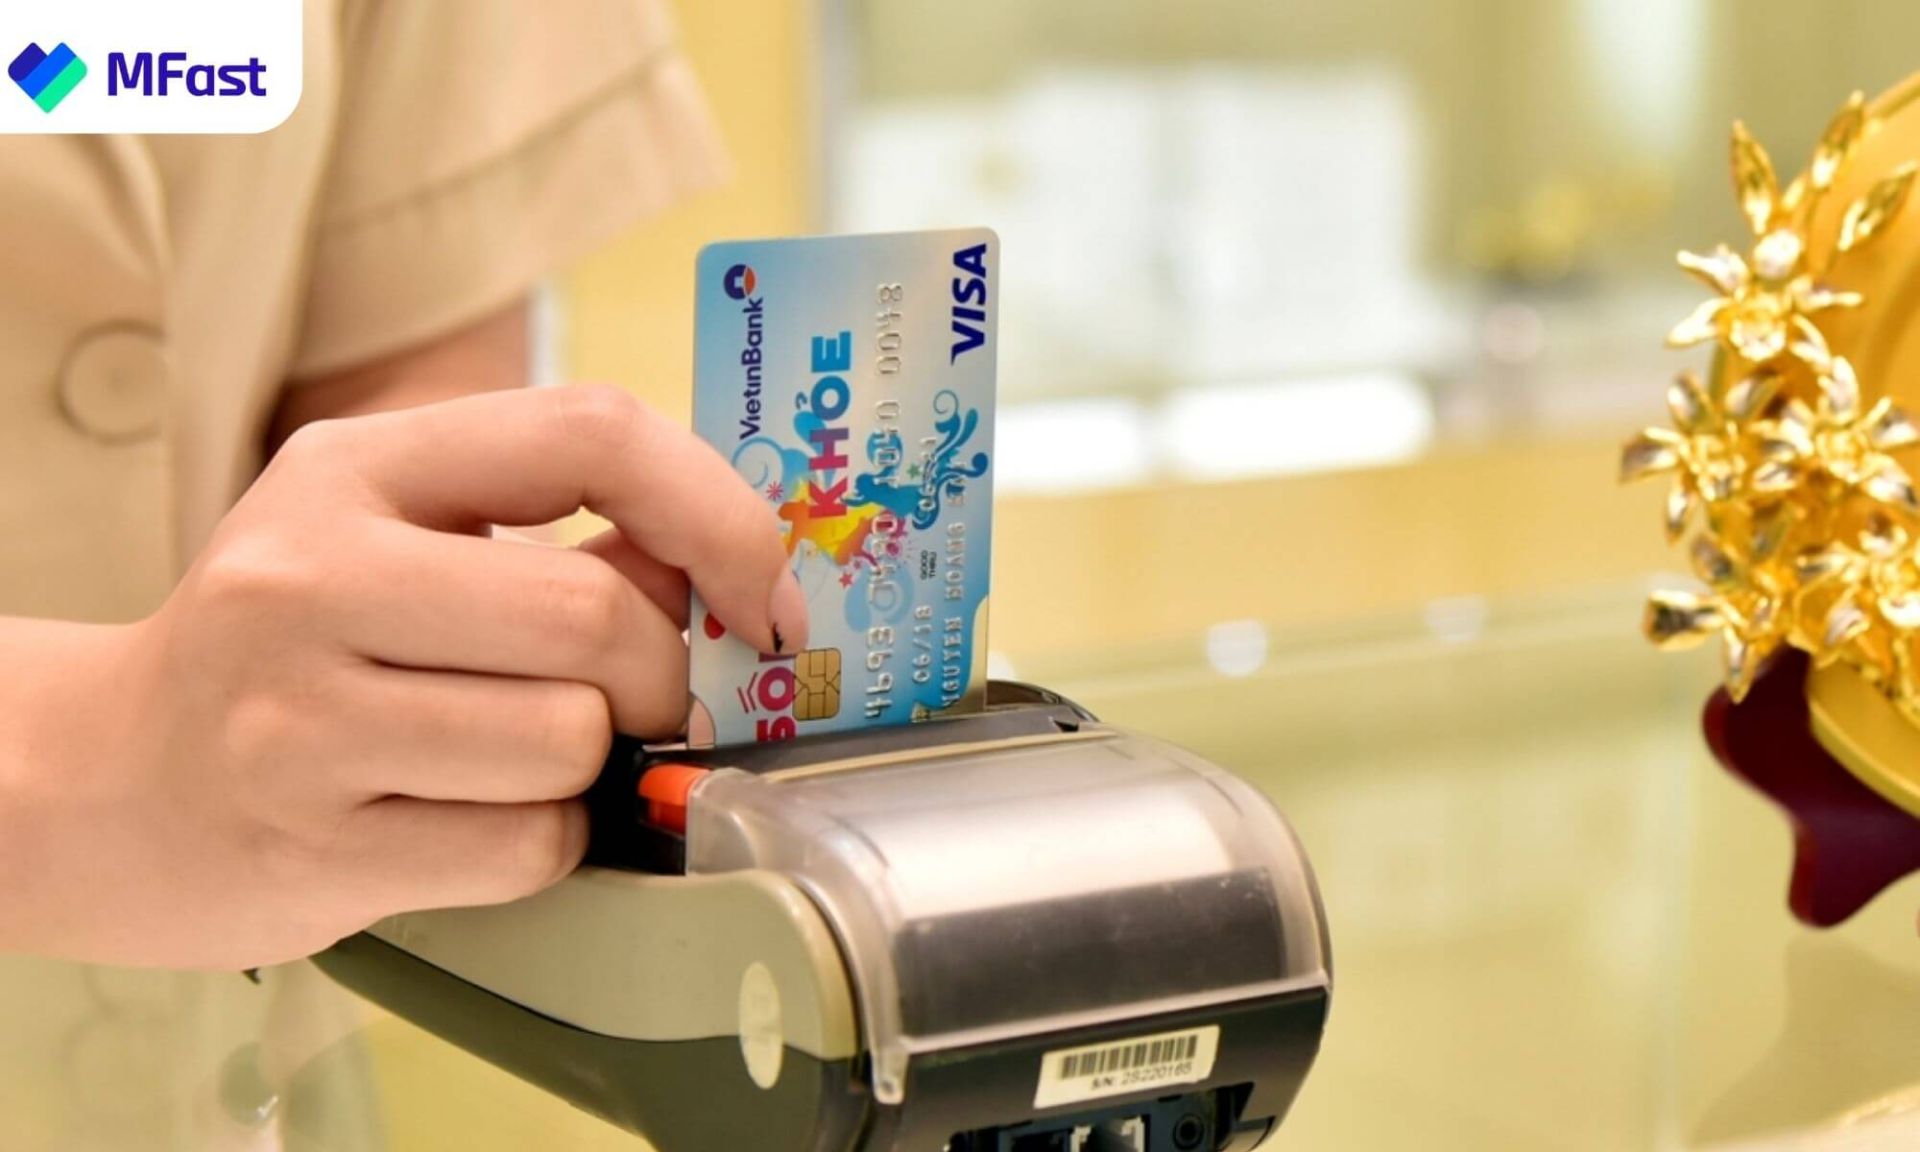  thẻ tín dụng quốc tế và thẻ tín dụng nội địa